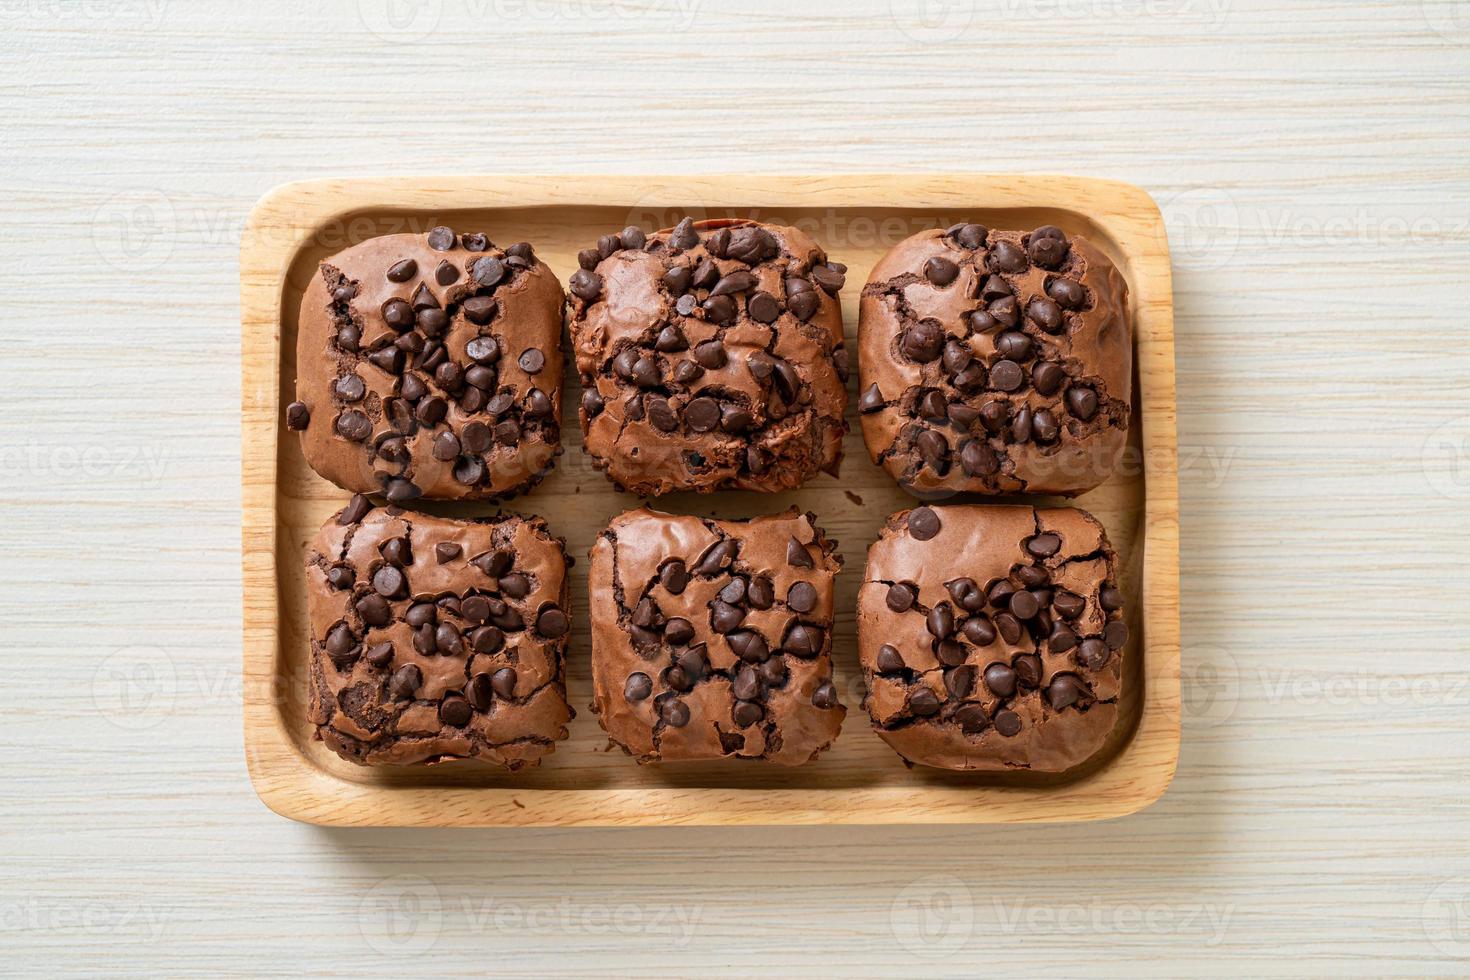 brownies de chocolate amargo con chispas de chocolate encima foto